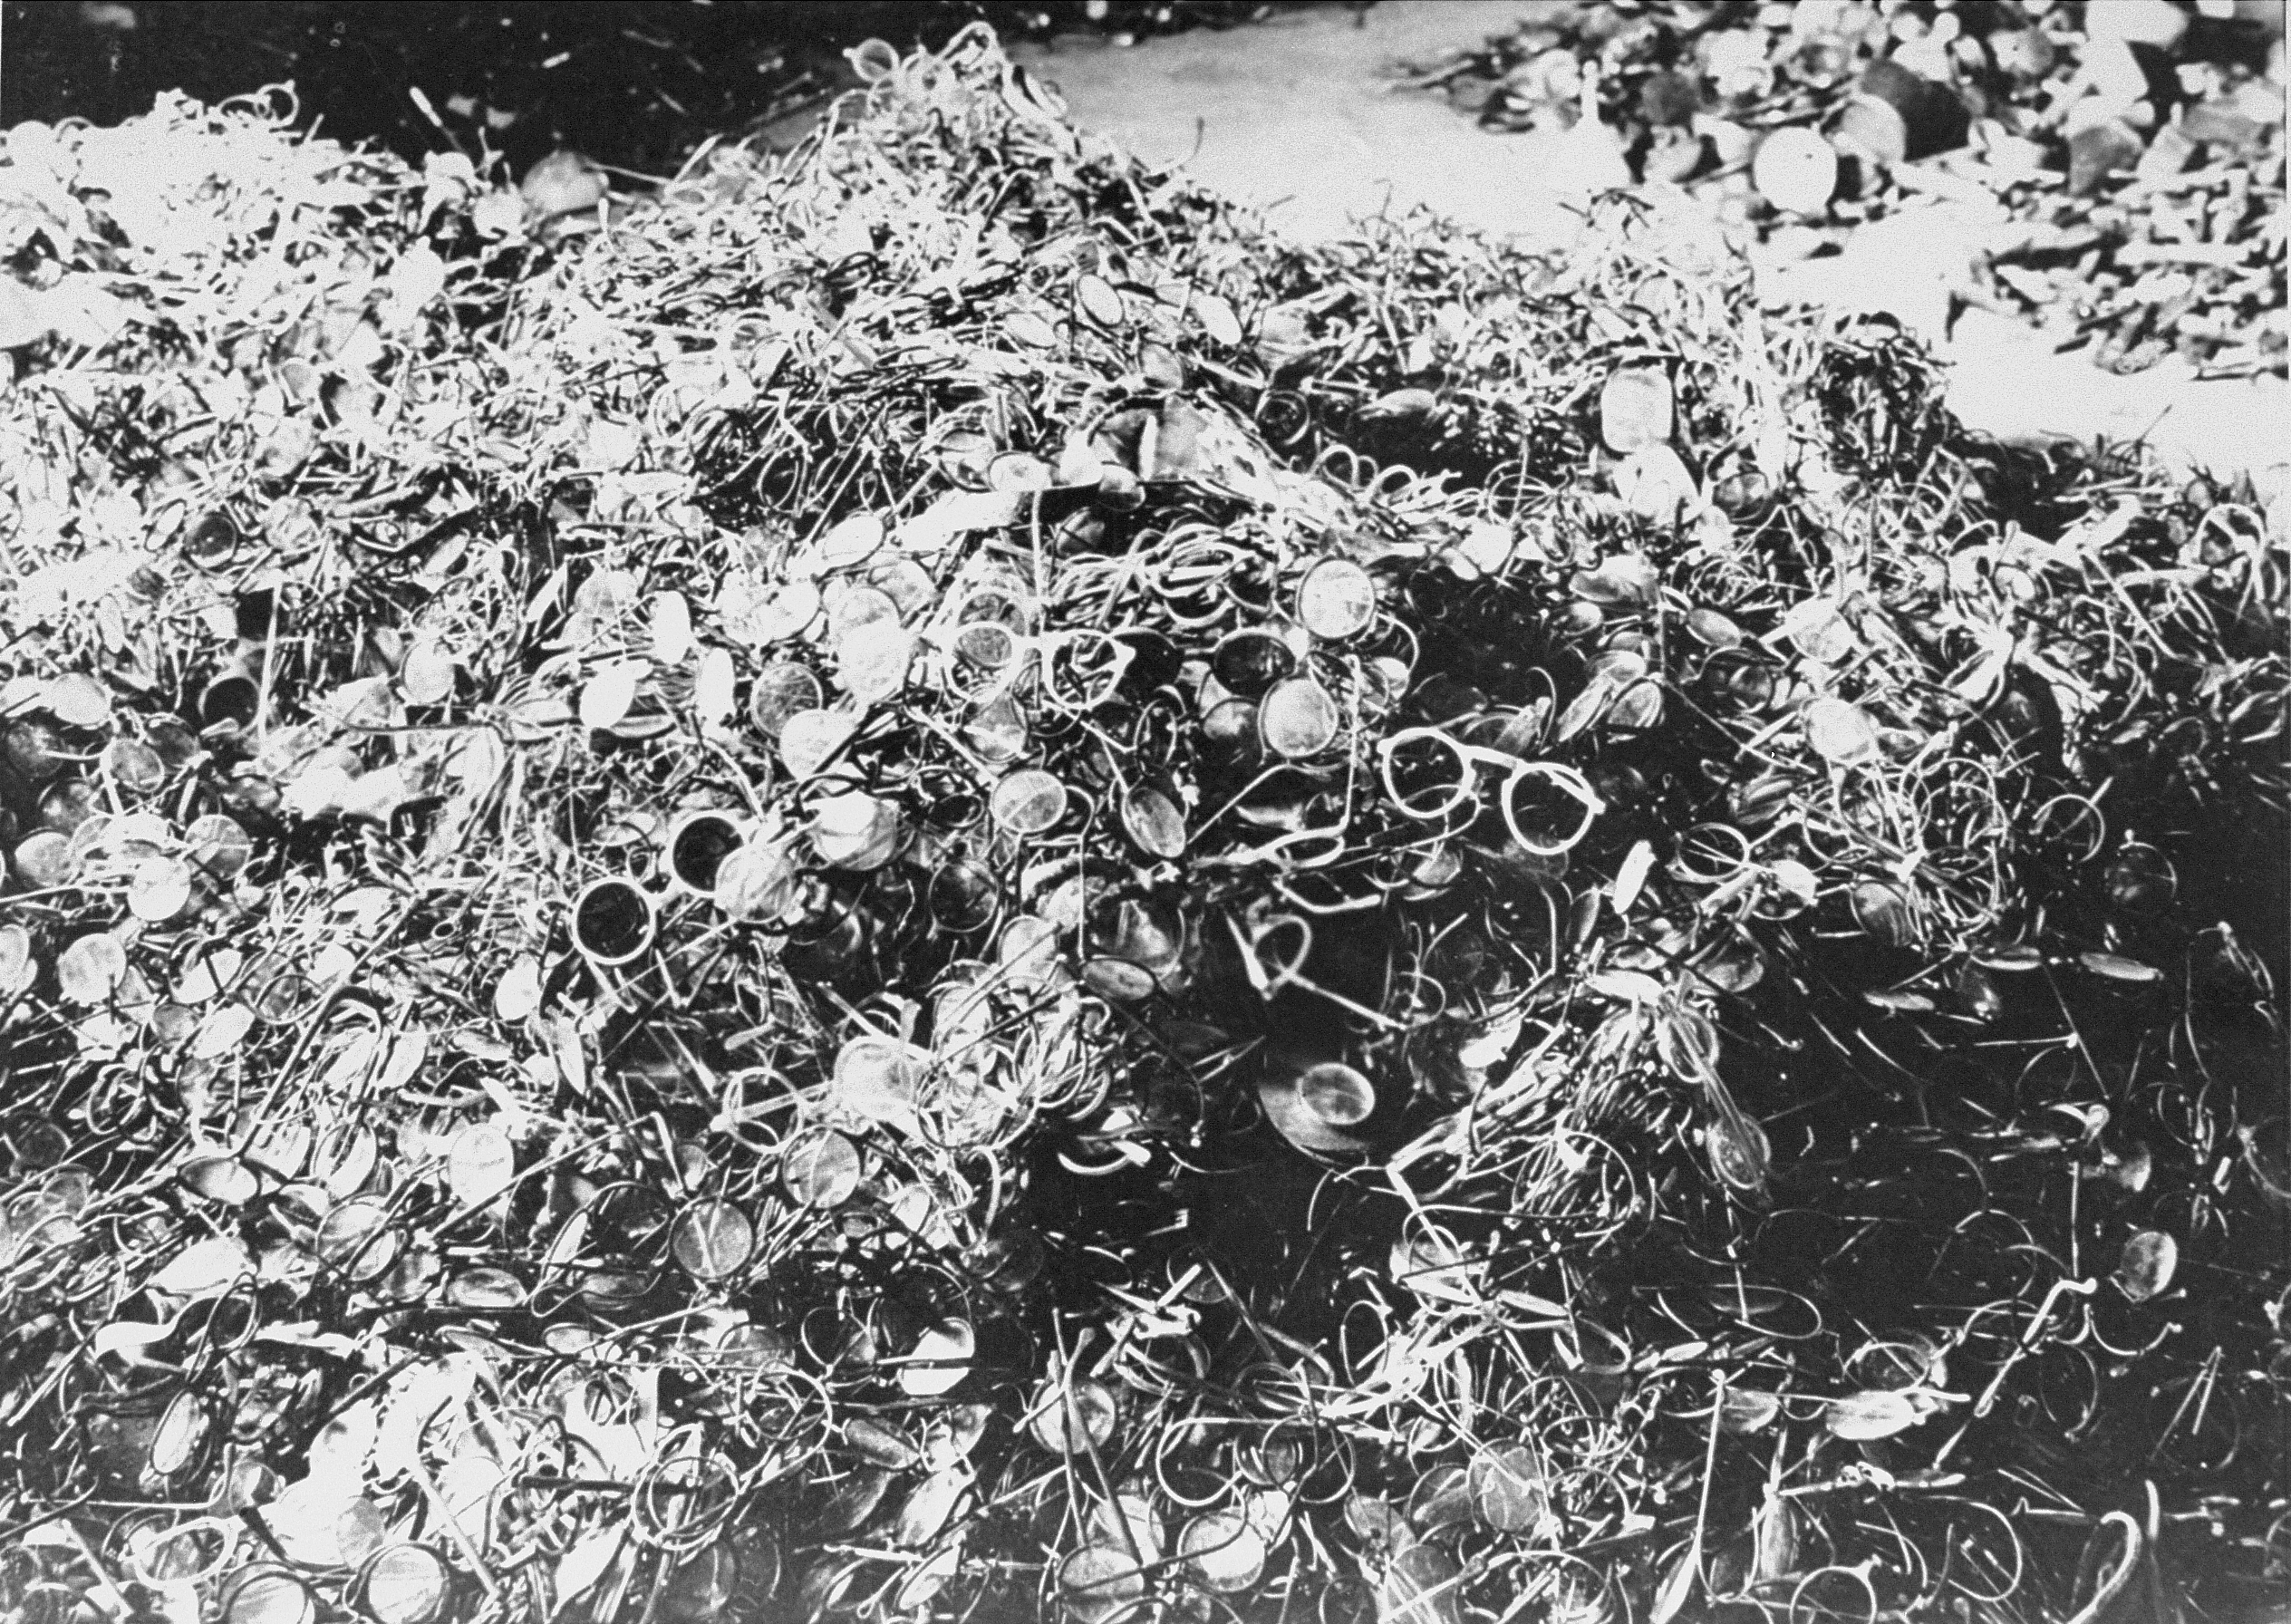 Occhiali appartenuti ai deportati nel campo di Auschwitz. Bundesarchiv, Bild 183-R69919 / CC-BY-SA 3.0